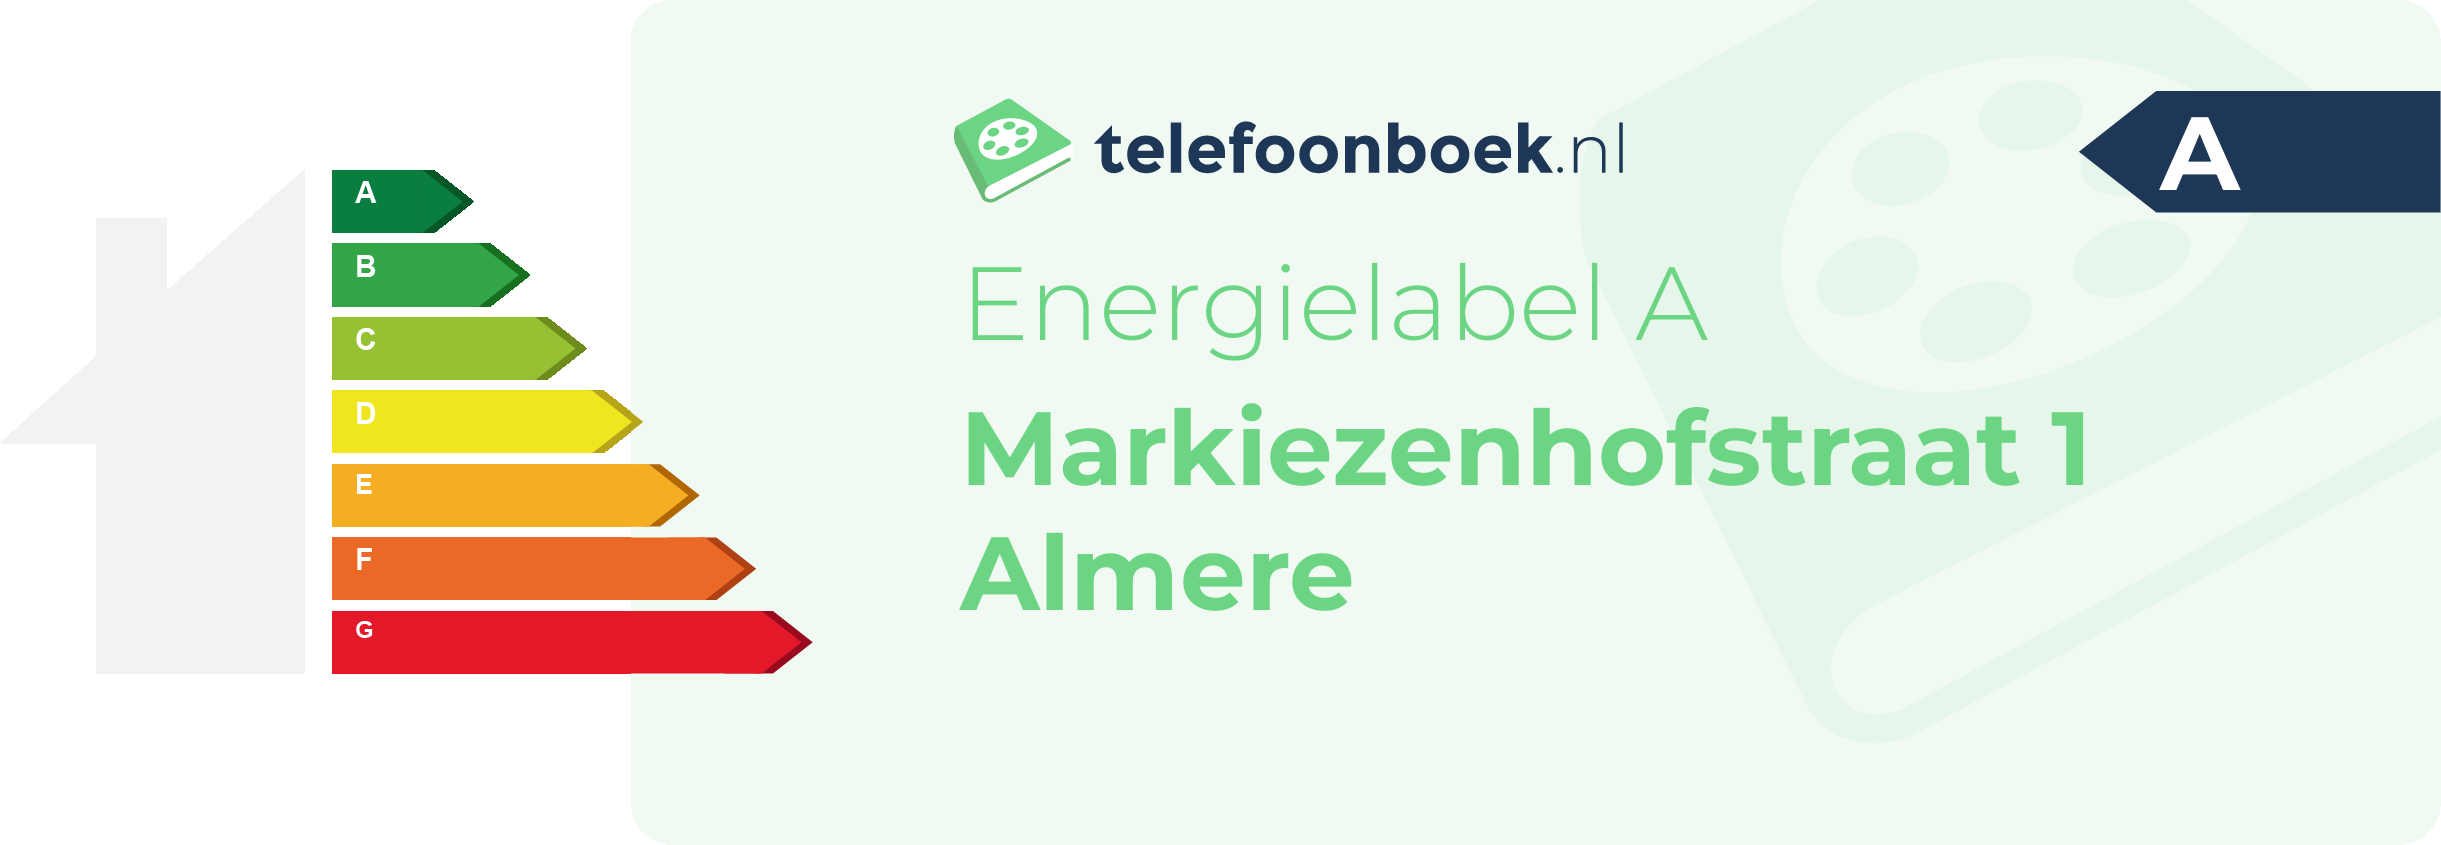 Energielabel Markiezenhofstraat 1 Almere